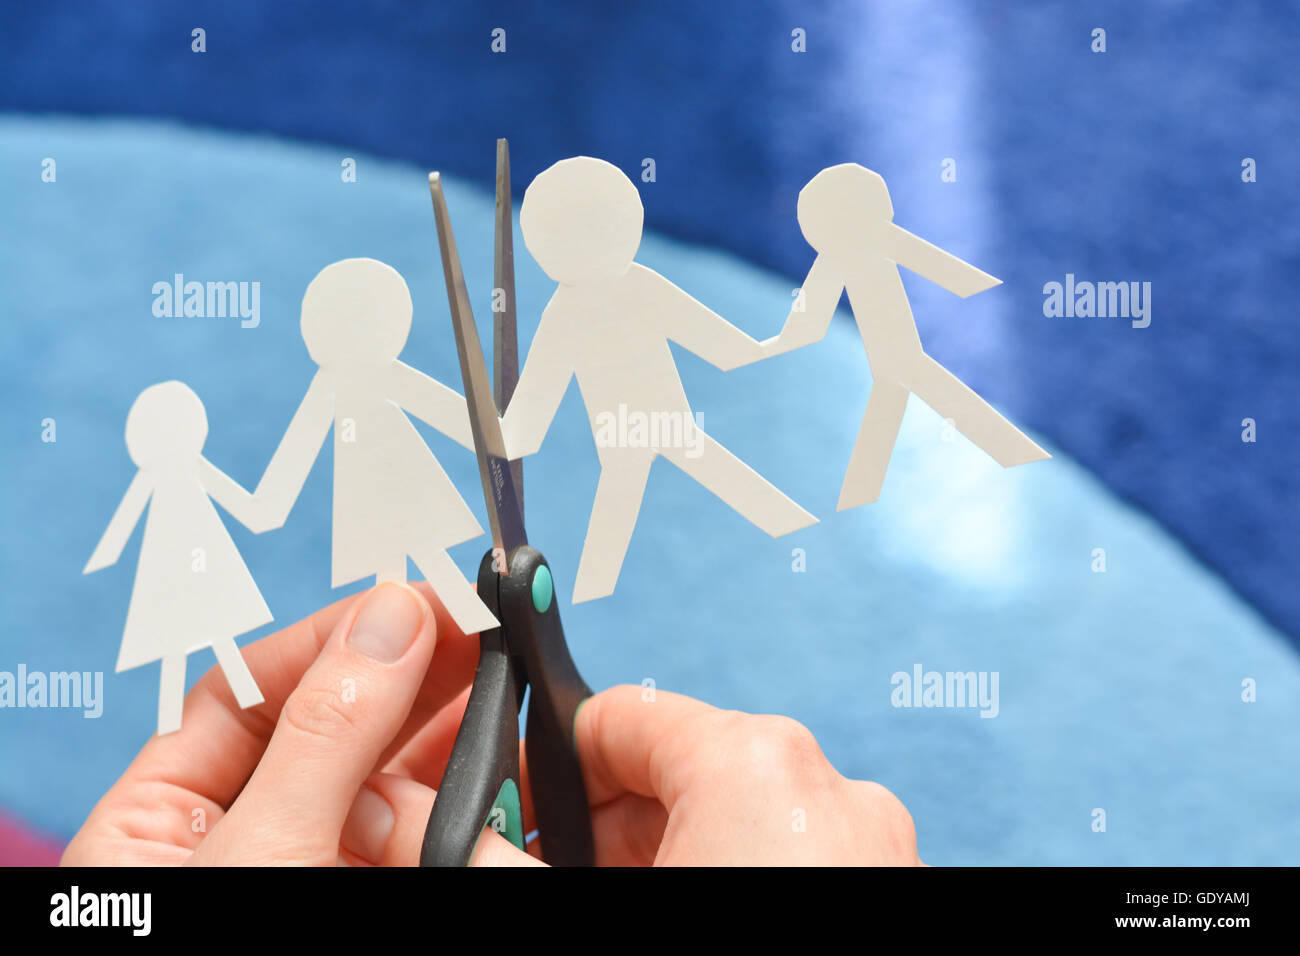 Divorce famille concept avec les formes de papier et ciseaux à penser les problèmes de rapport Banque D'Images